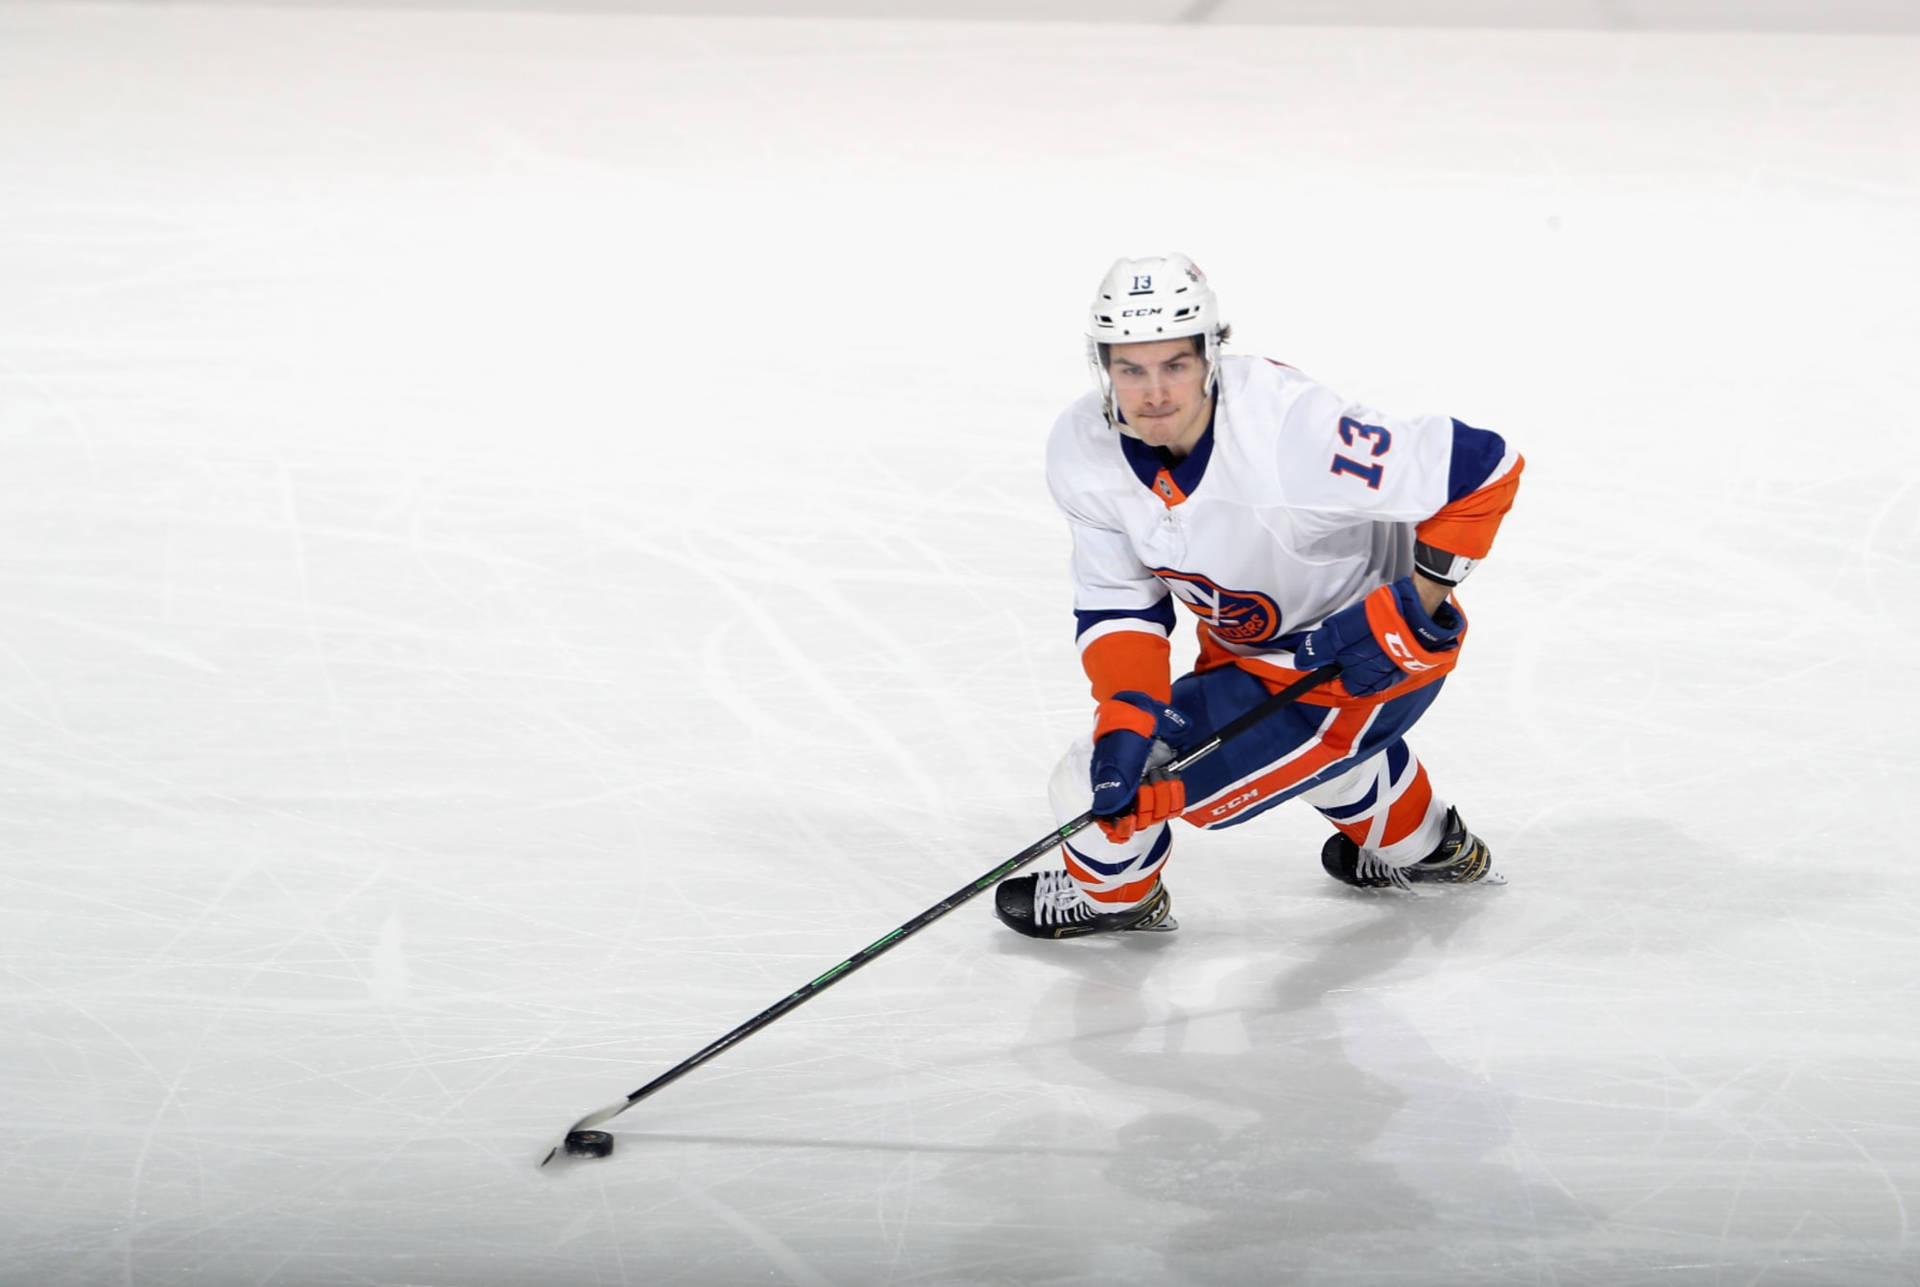 Canadisk ishockey-spiller Mathew Barzal høj vinkel skud Wallpaper